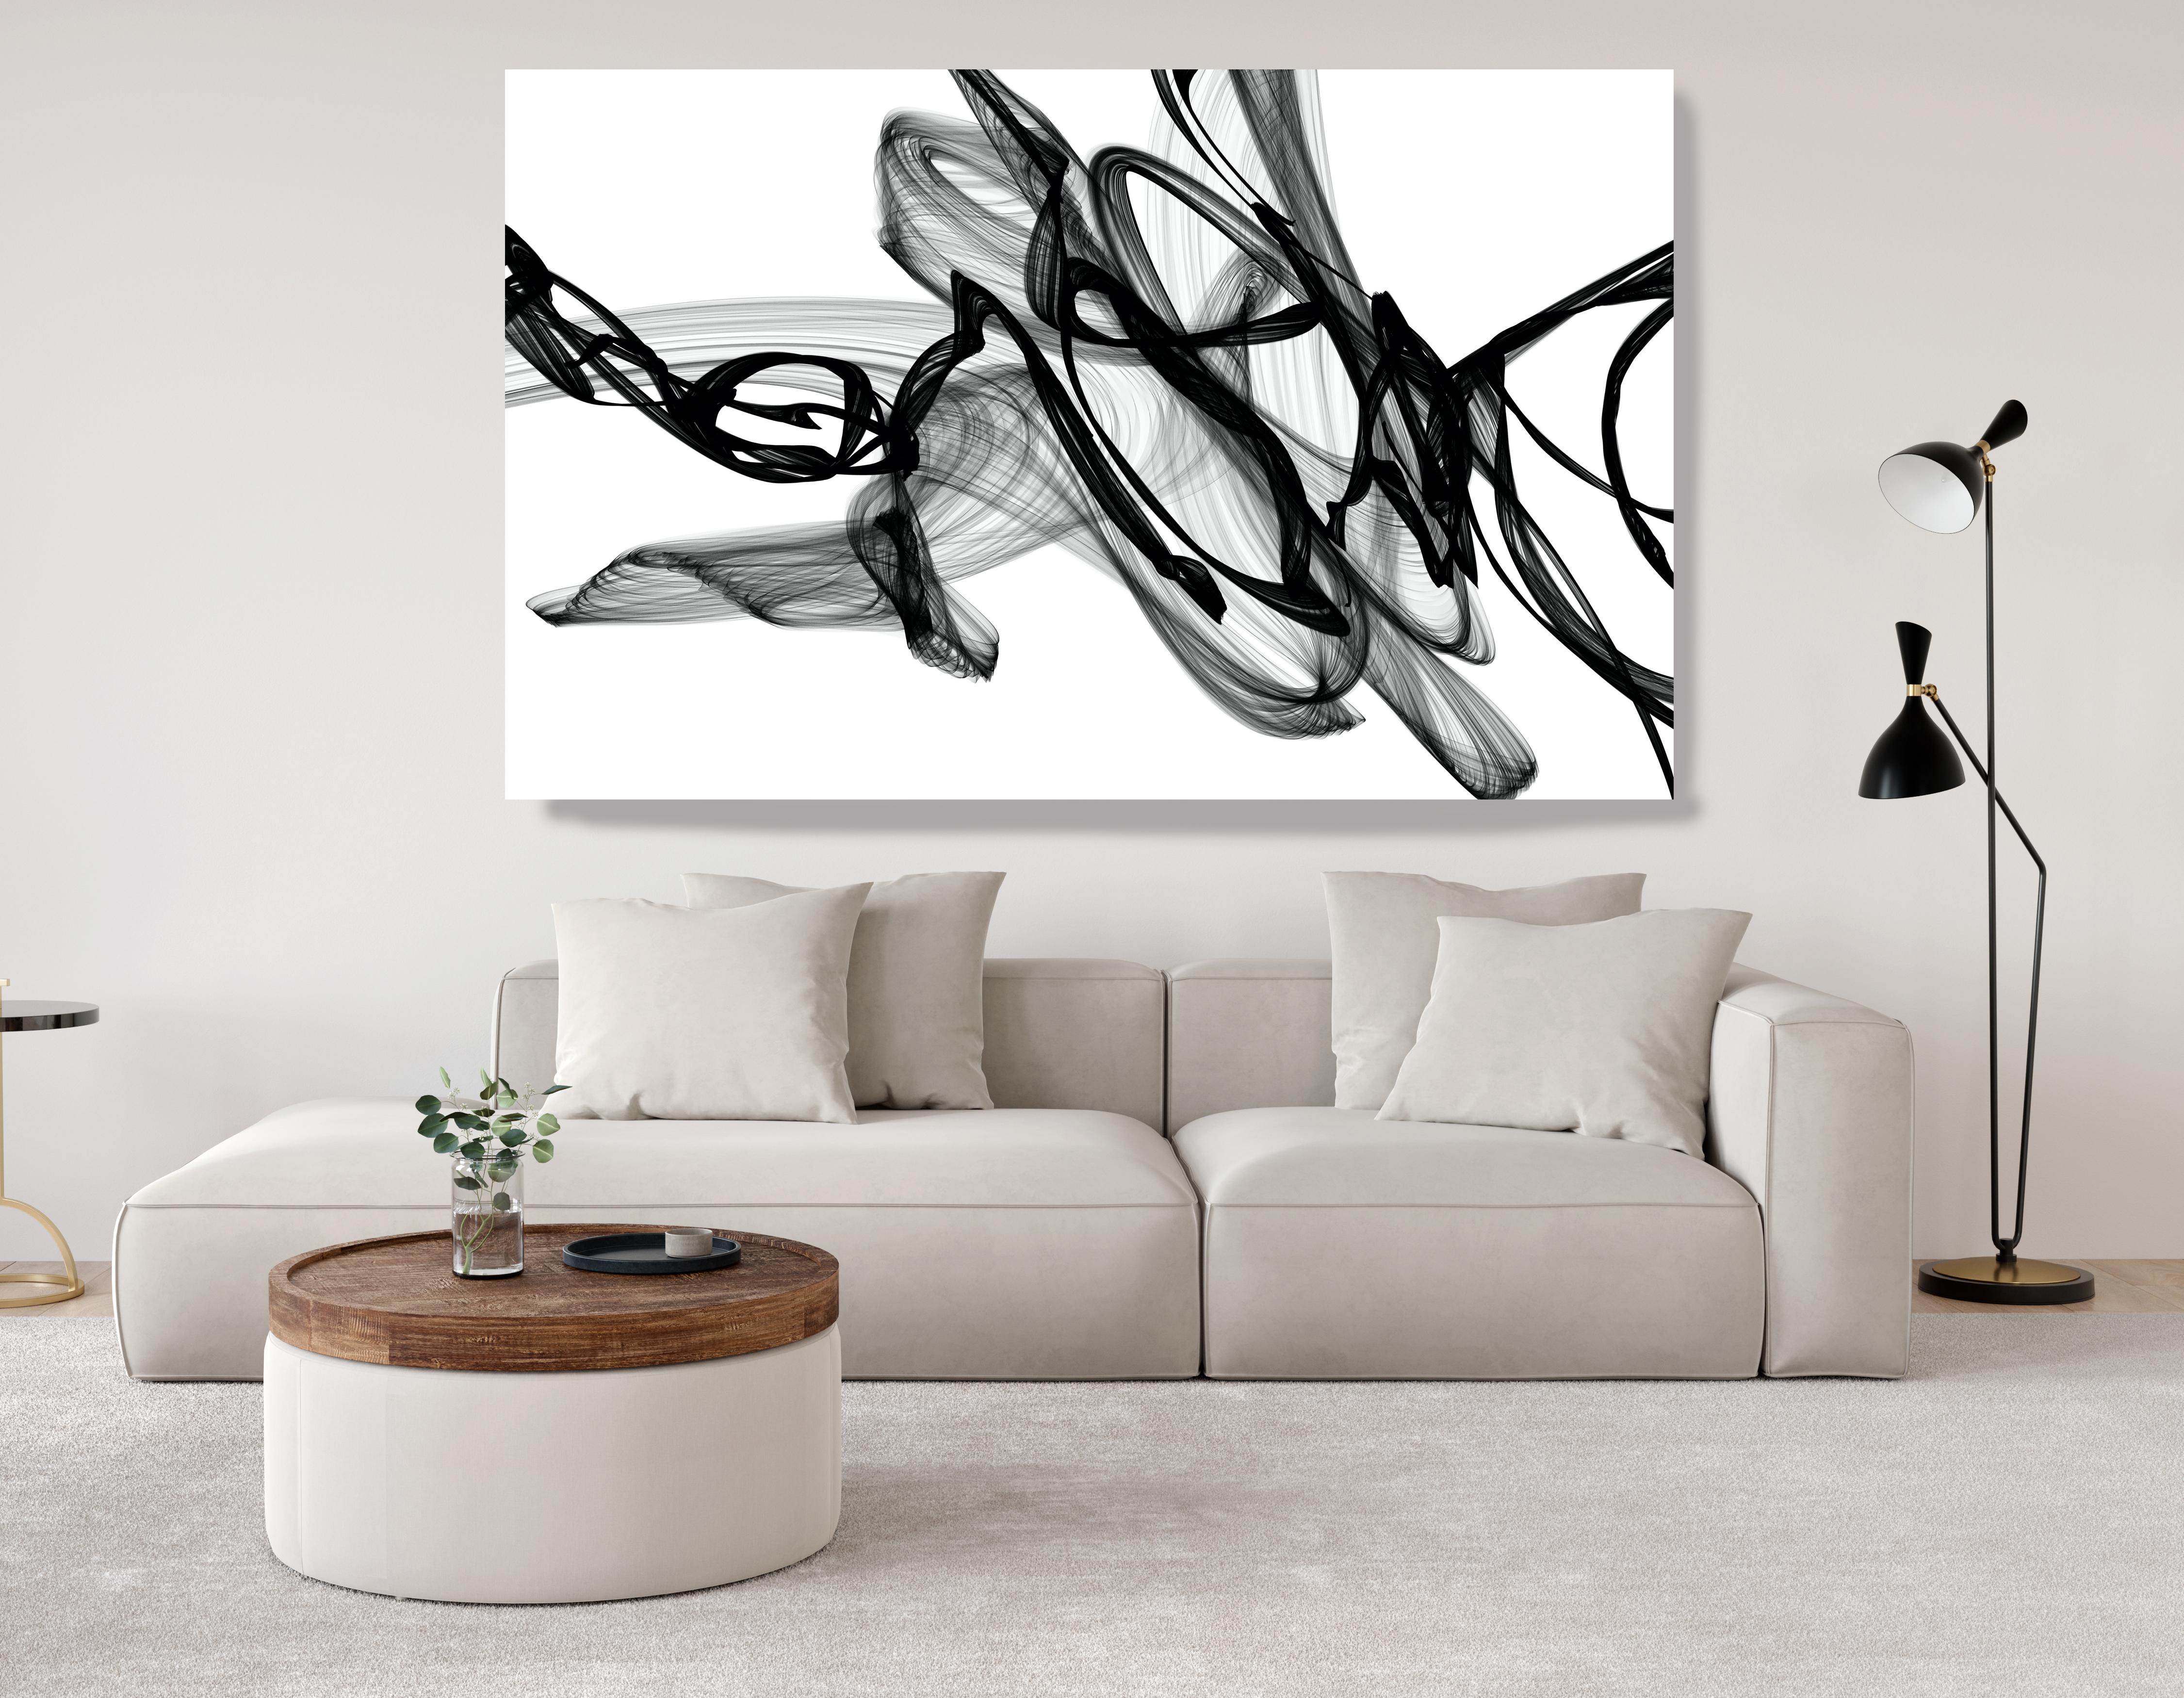 Les nouveaux médias noirs et blancs minimalistes contre la peinture 116,84 cm H X 203,24 cm L La nuit